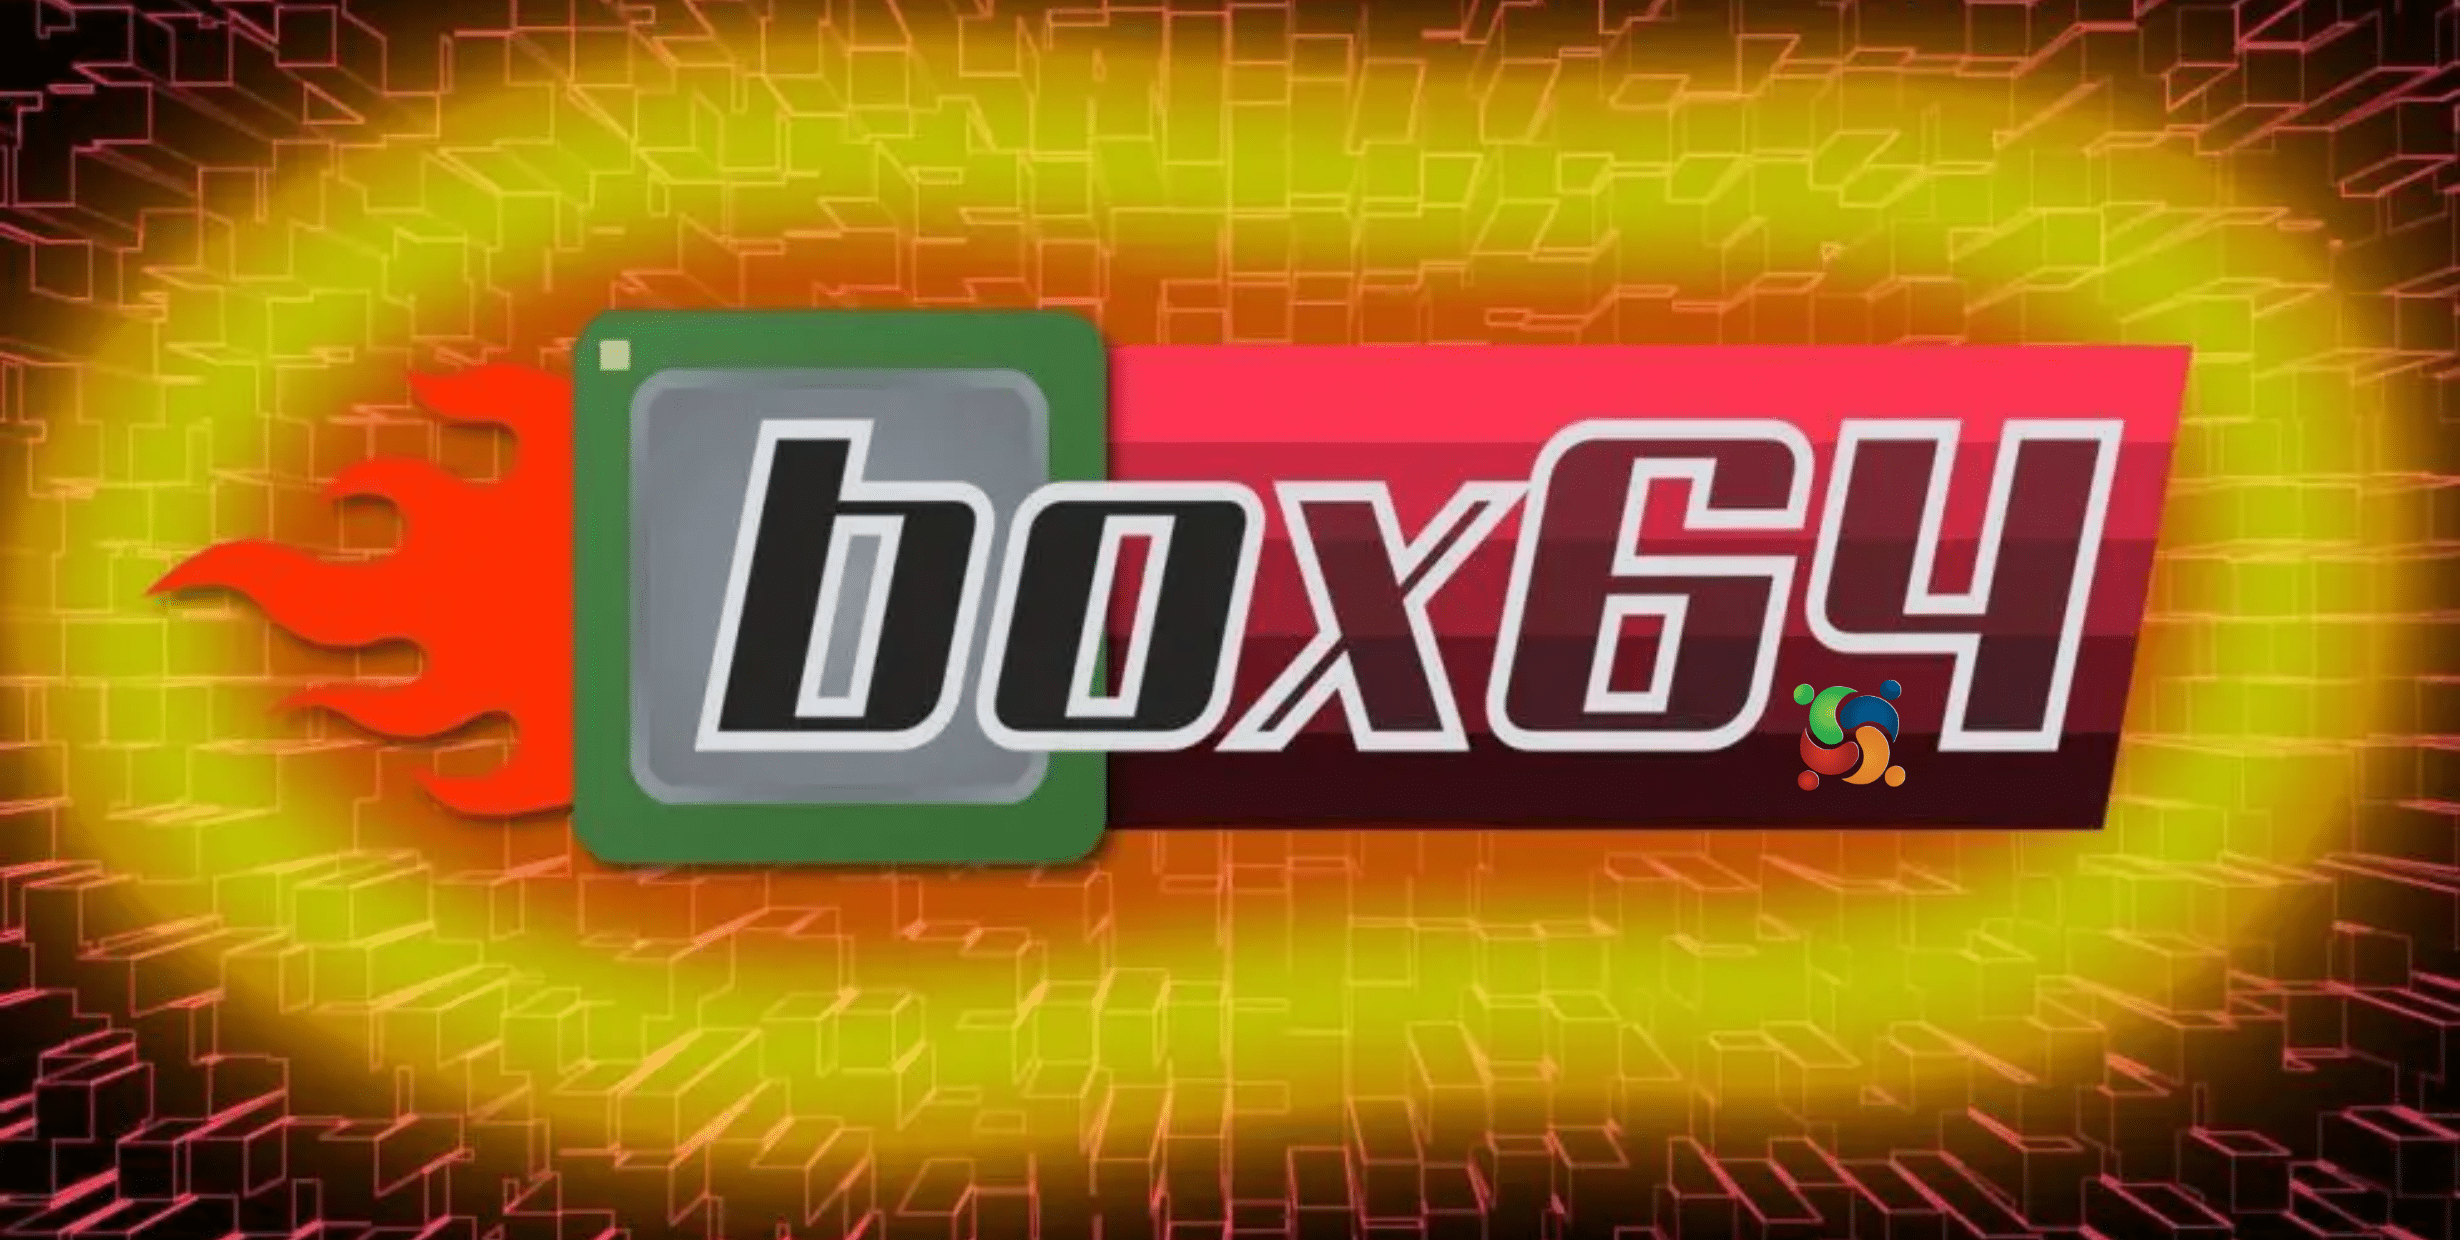 Box64 0.2.4 permite que jogos x86-64 reproduzidos no RISC-V